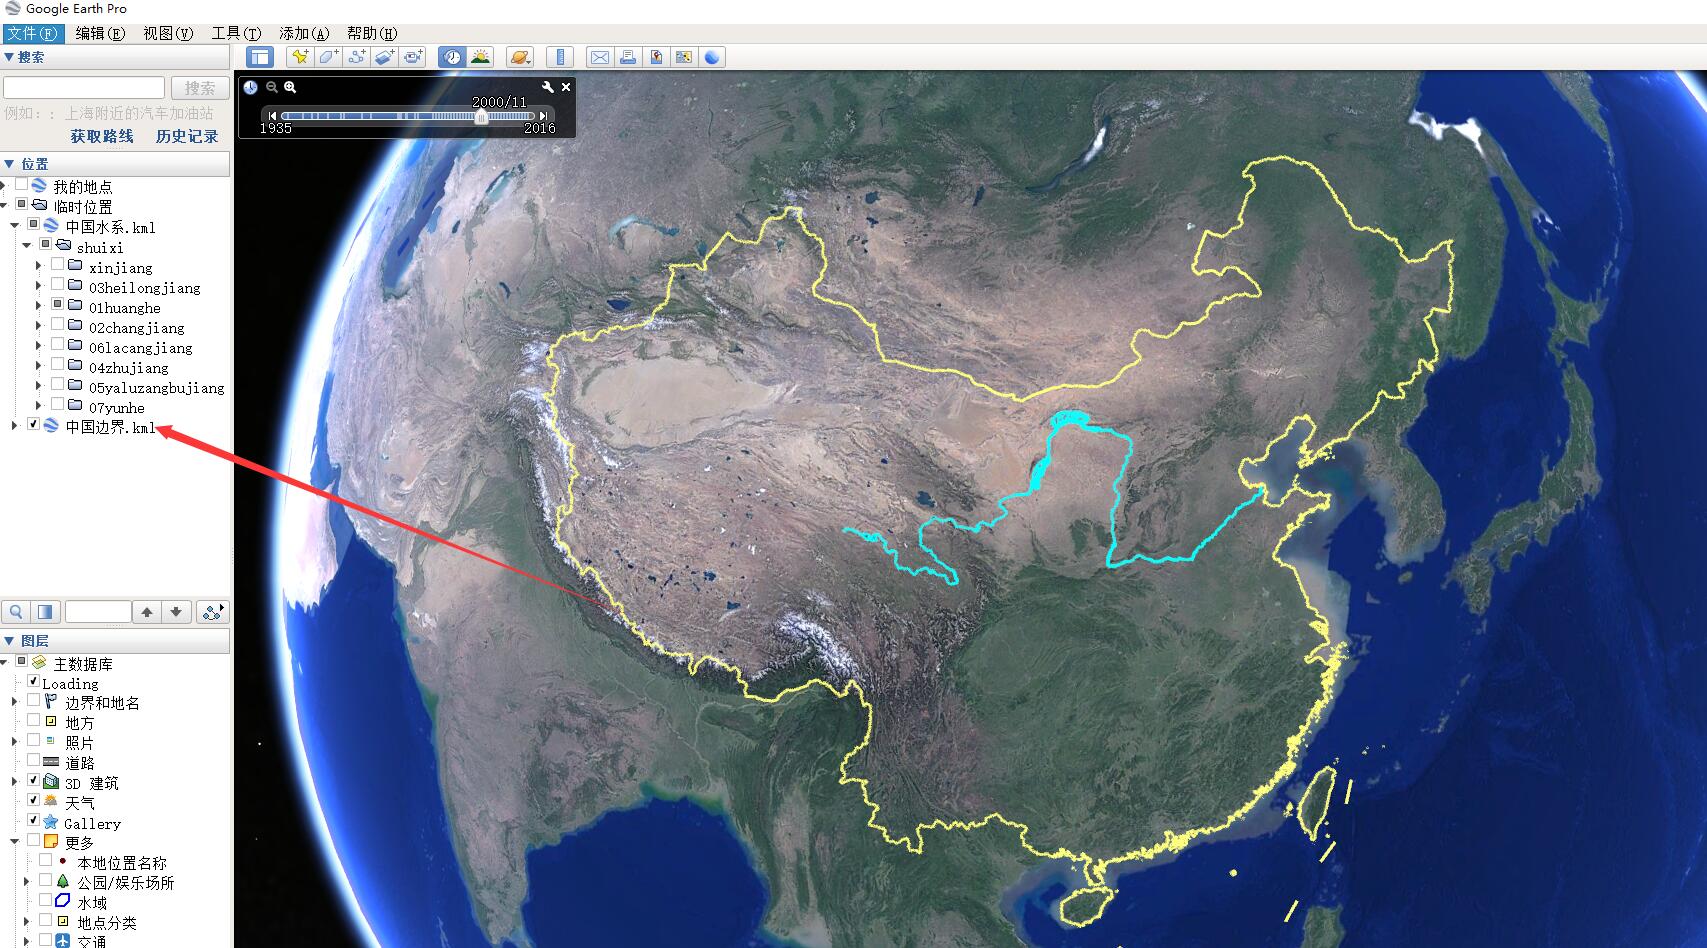 谷歌地球 mac版下载-Google Earth Pro for Mac(谷歌地球专业版) - macw下载站